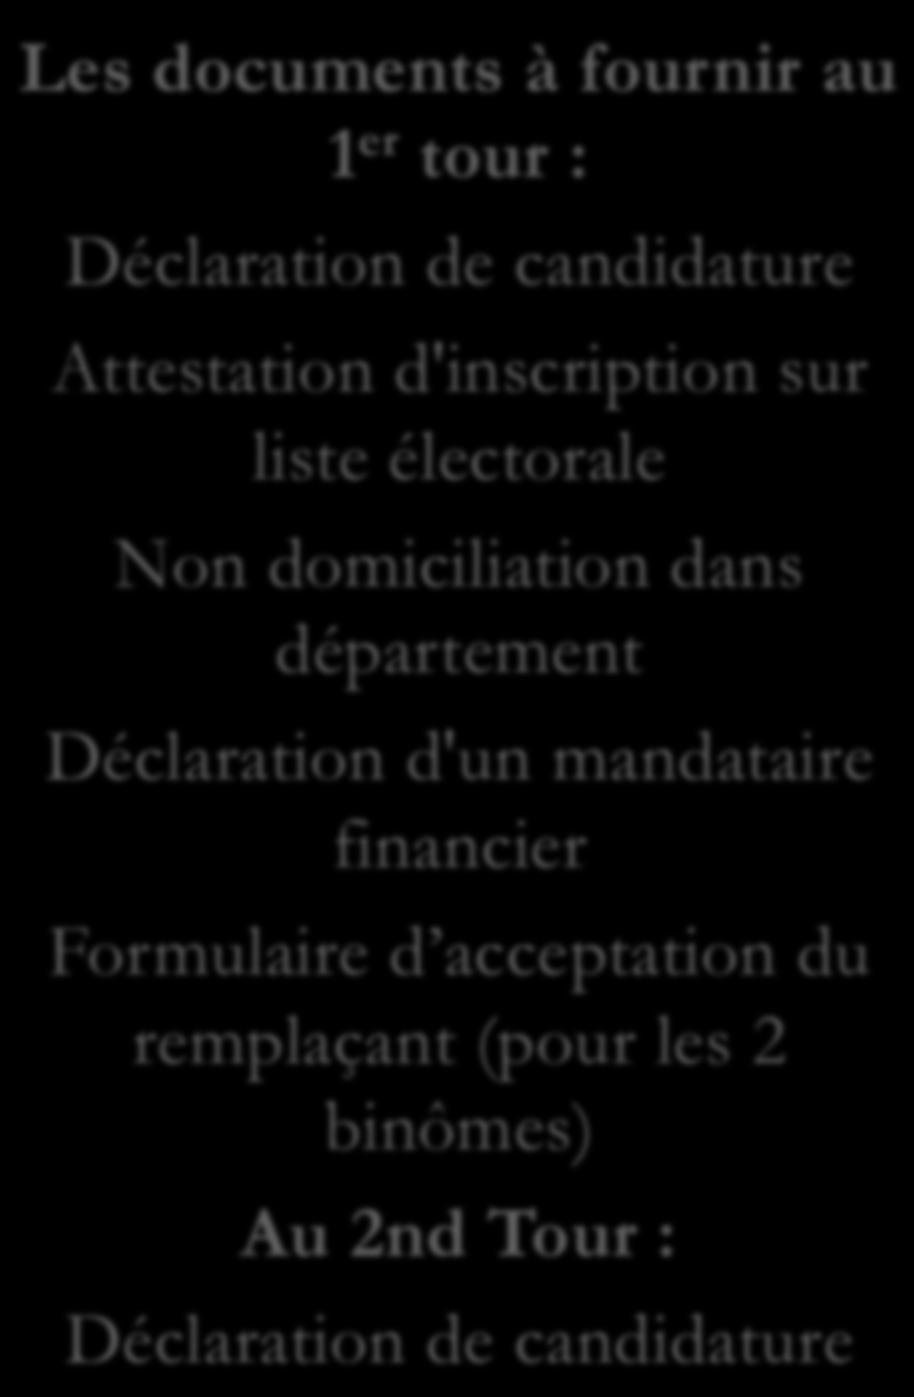 d'inscription sur liste électorale Non domiciliation dans département Déclaration d'un